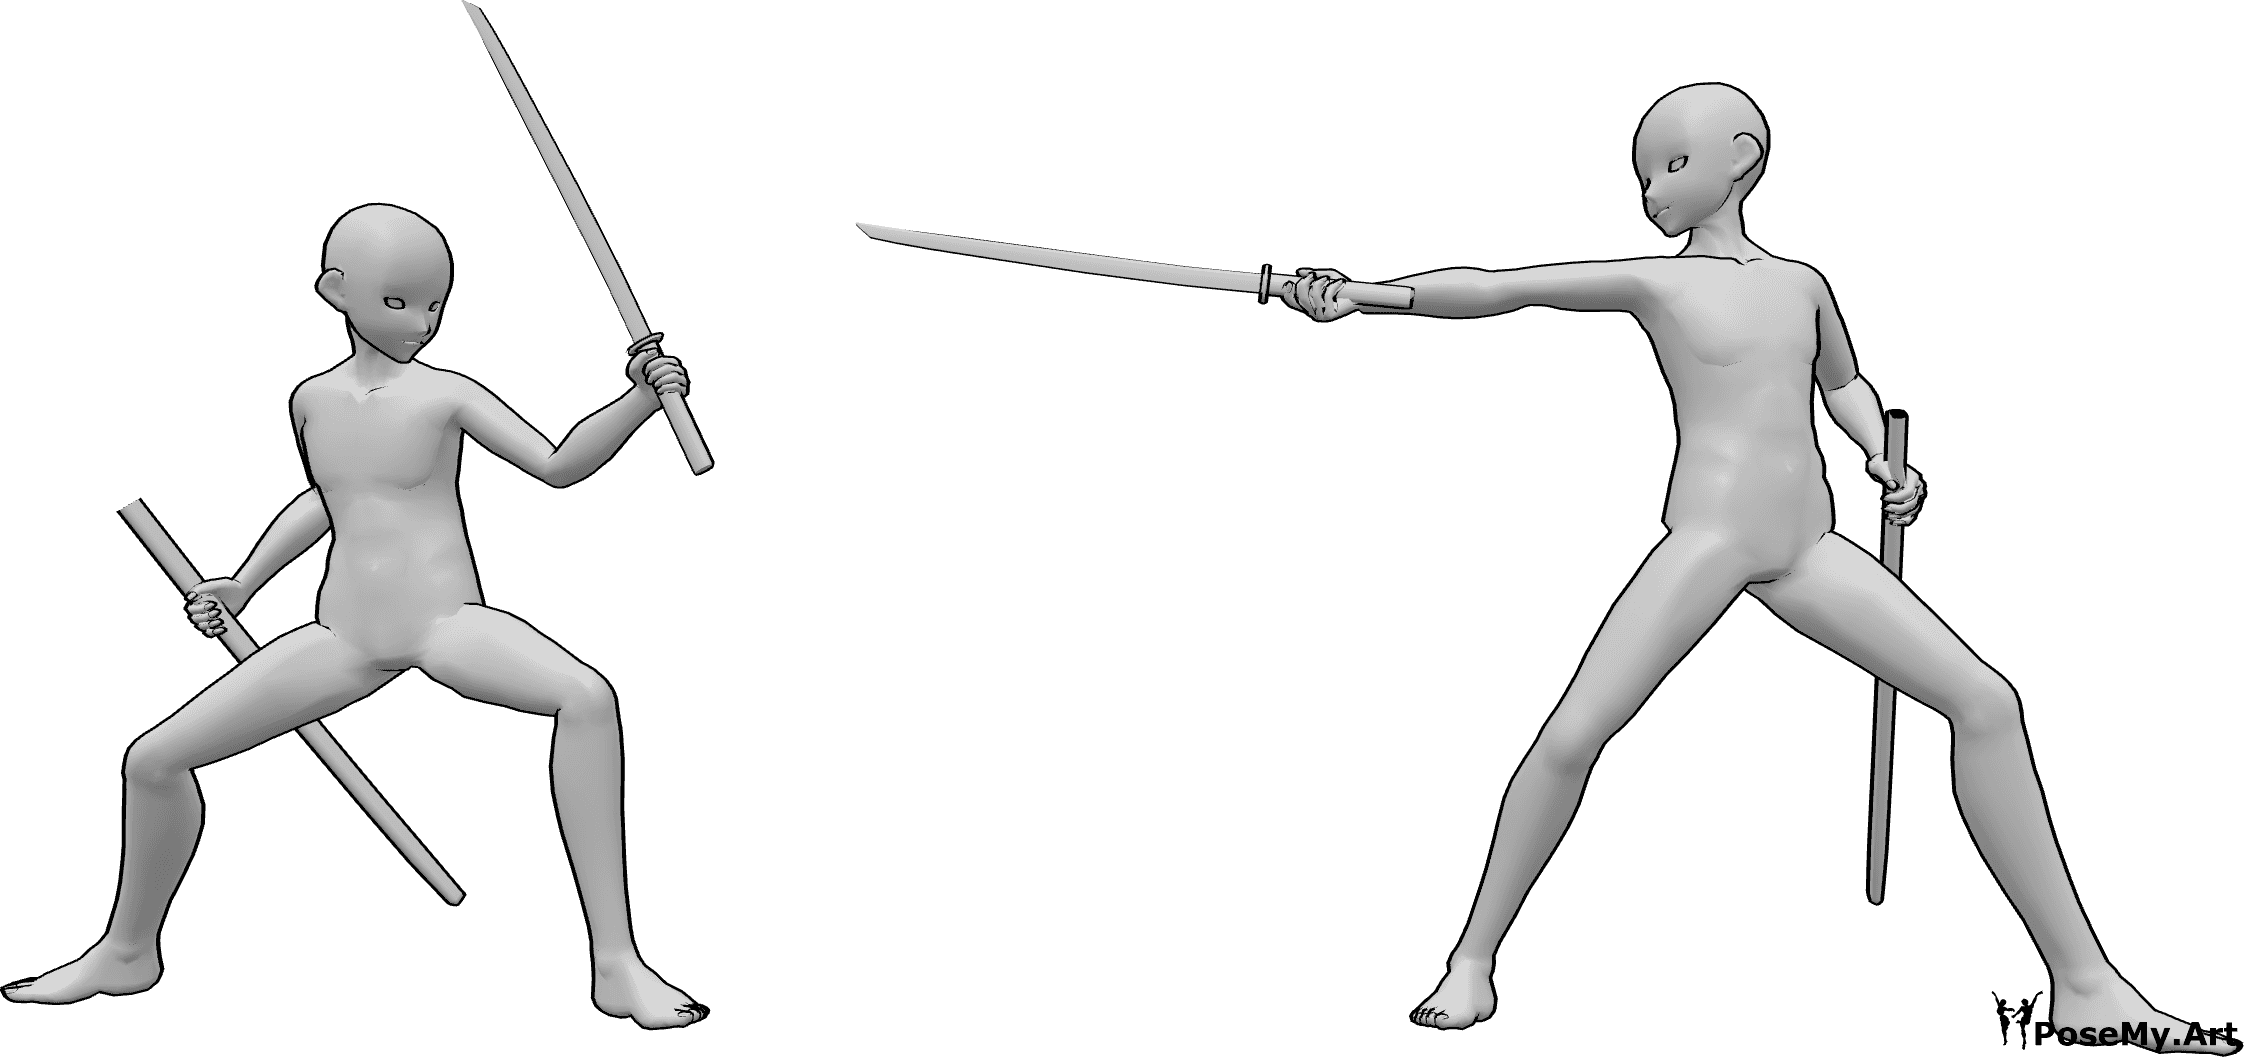 Référence des poses- Anime samurai fight pose - Des hommes animés se font face et s'invitent à se battre avec leurs katanas.